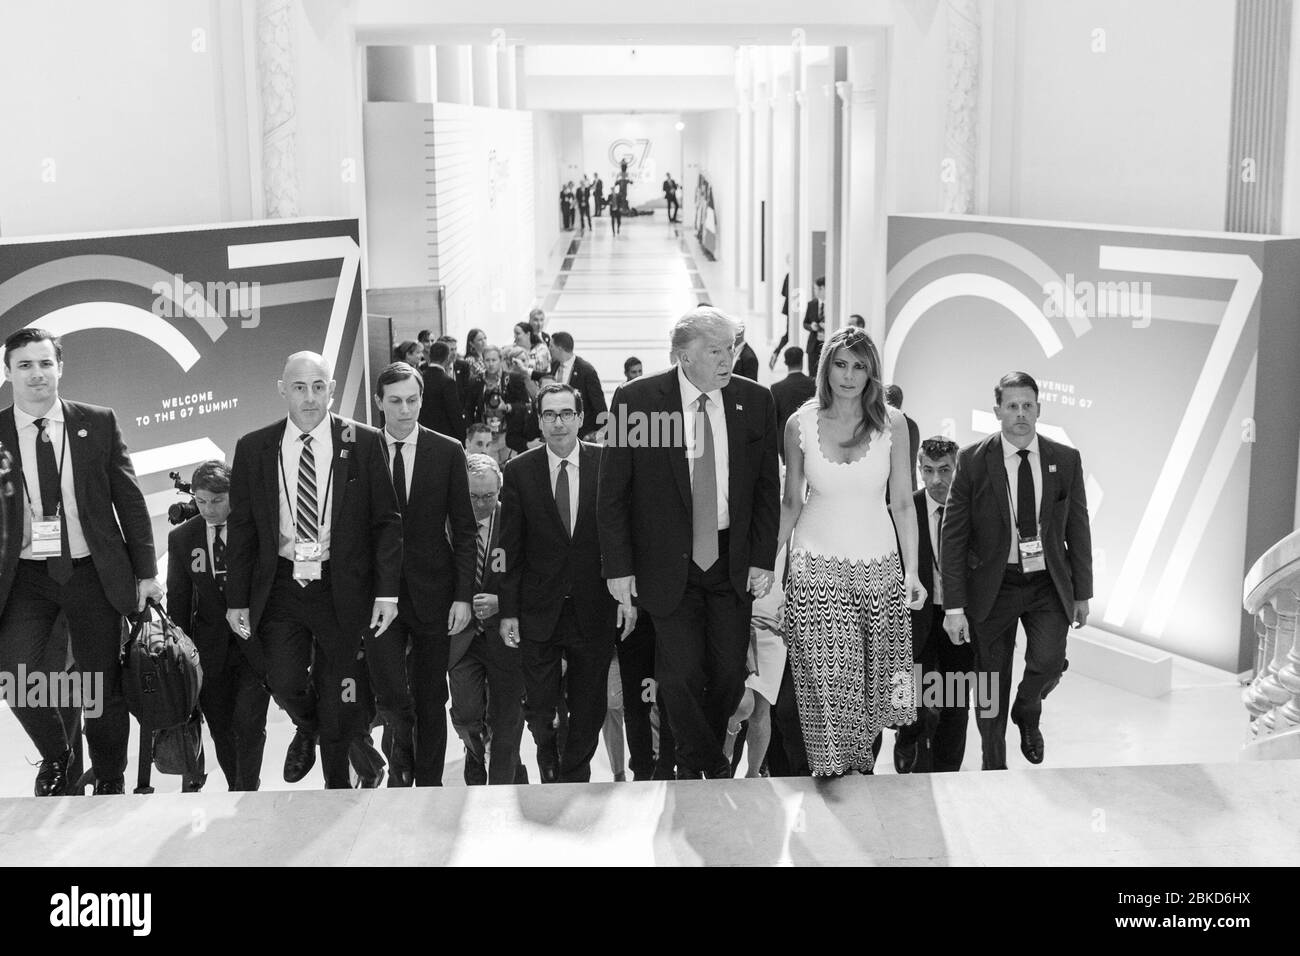 Le président Donald J. Trump, la première dame Melania Trump et les hauts fonctionnaires partent d'une conférence de presse du sommet du G-7 avec le président Emmanuel Macron de France le lundi 26 août 2019 au Centre de congrès Bellevue à Biarritz, en France. #G7Biarritz Banque D'Images